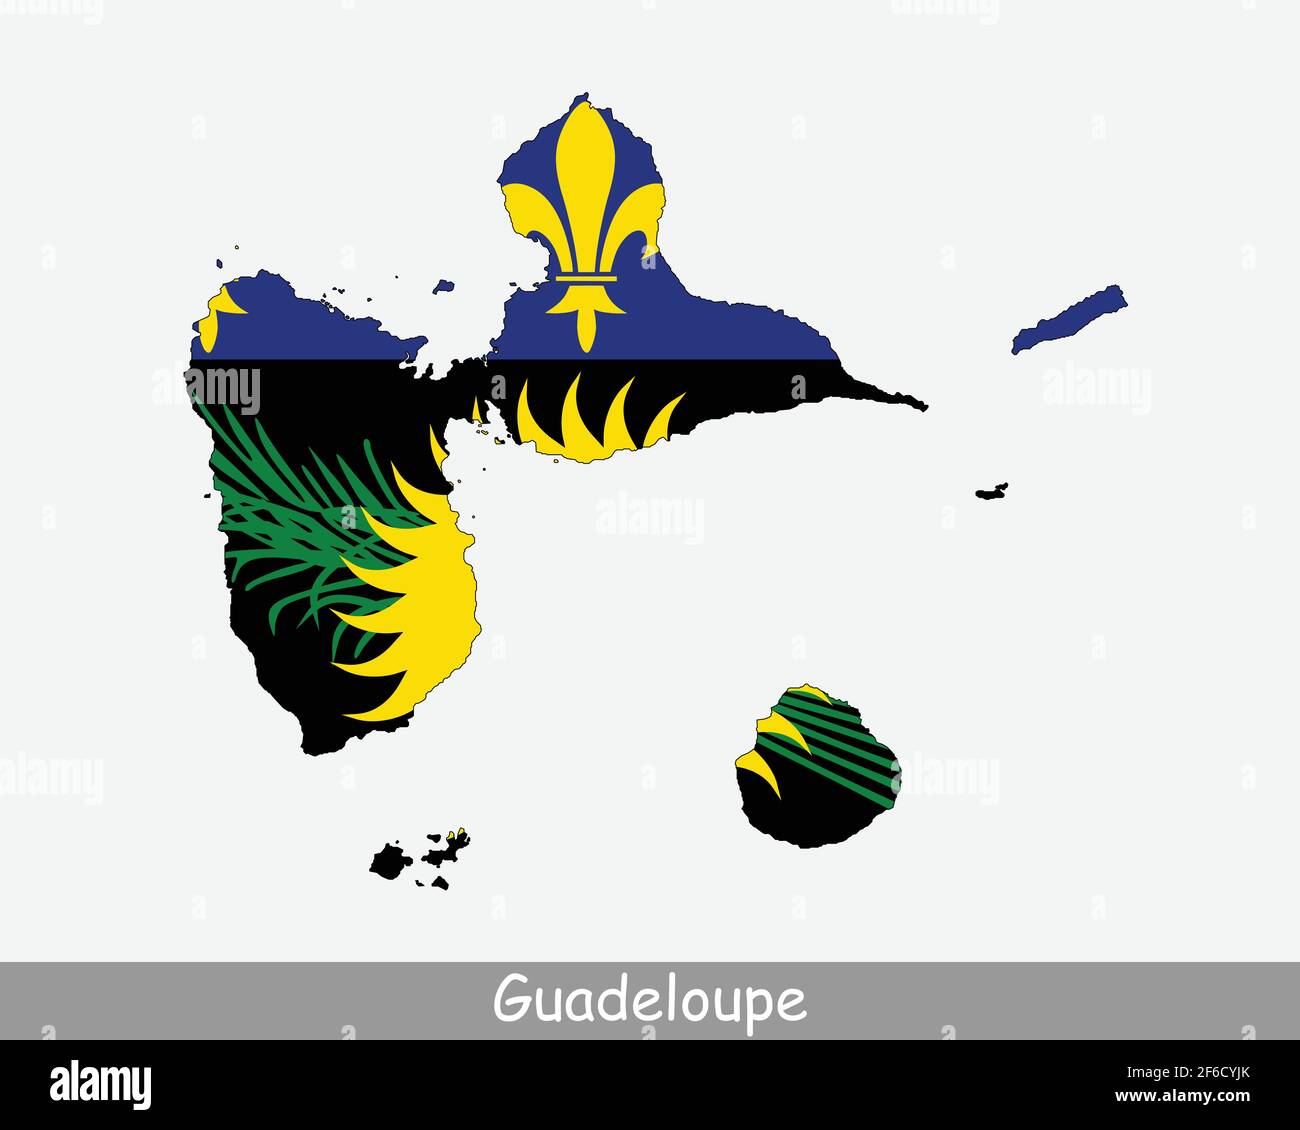 Drapeau carte Guadeloupe. Carte de la Guadeloupe avec drapeau isolé sur fond blanc. Département et région d'outre-mer de France. Illustration vectorielle. Illustration de Vecteur